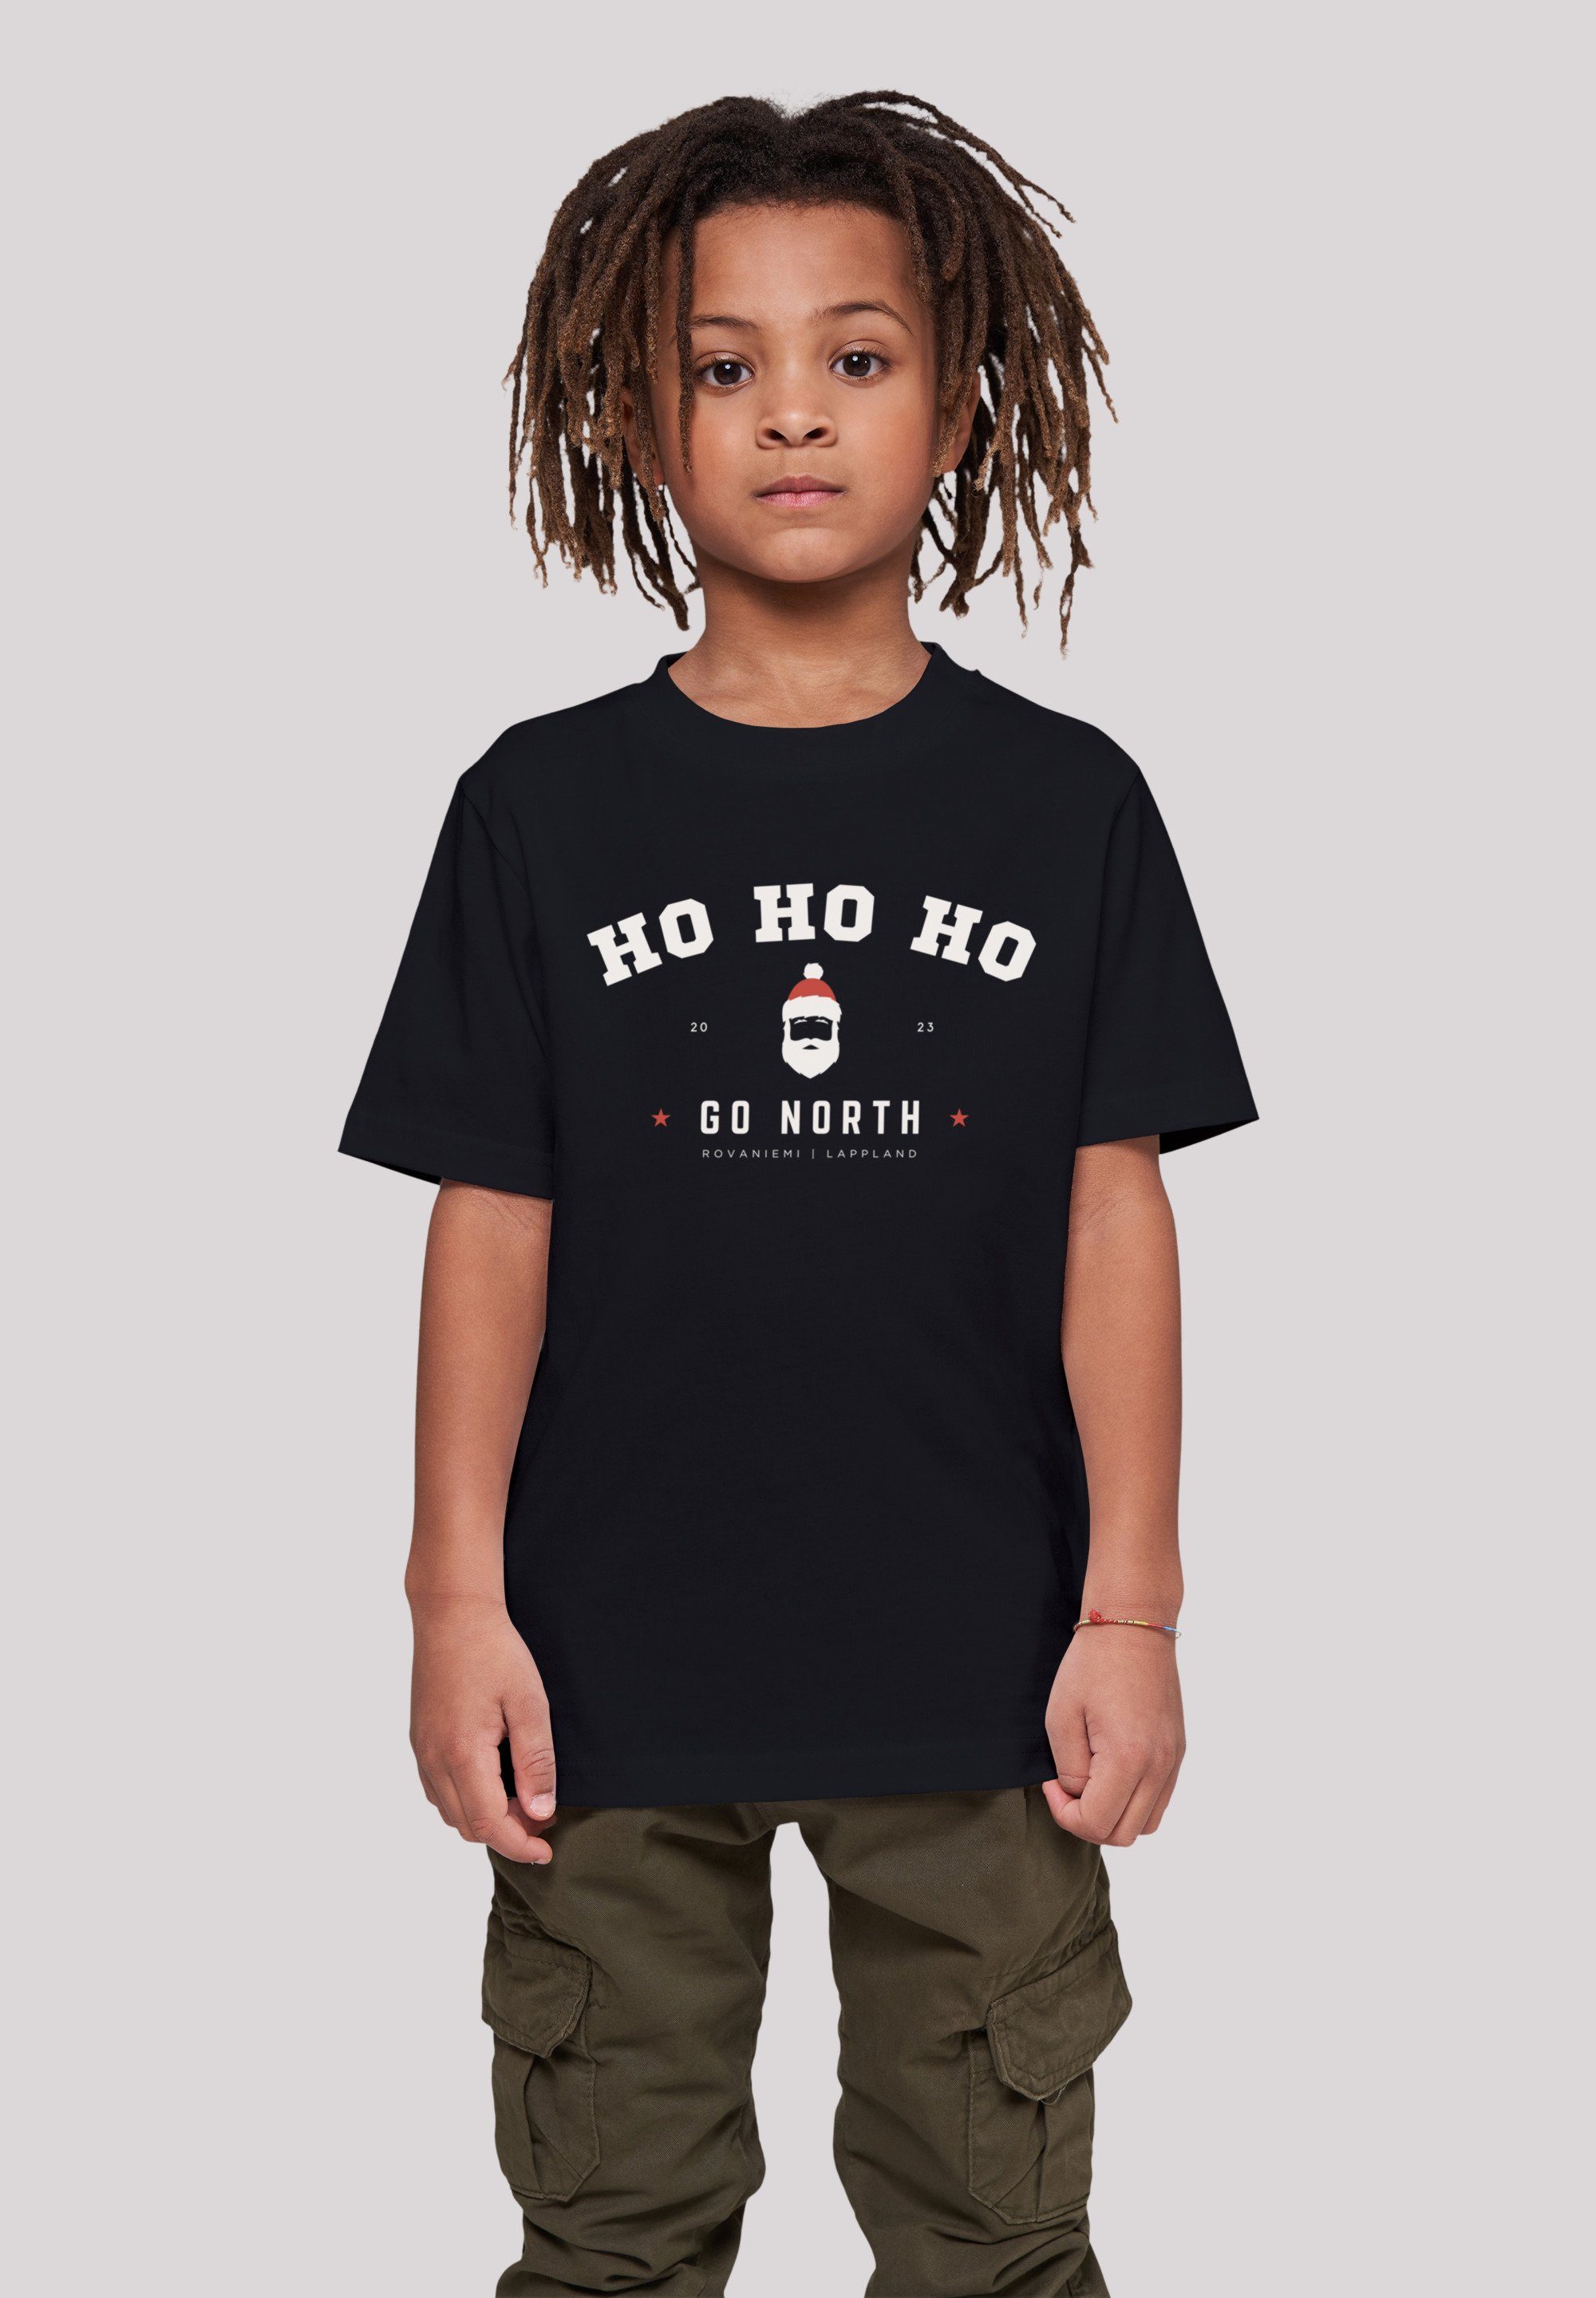 Geschenk, Ho Santa Logo, Claus T-Shirt F4NT4STIC T-Shirt Ho Kids Weihnachten mit Weihnachten, Ho Weihnachtsdesign